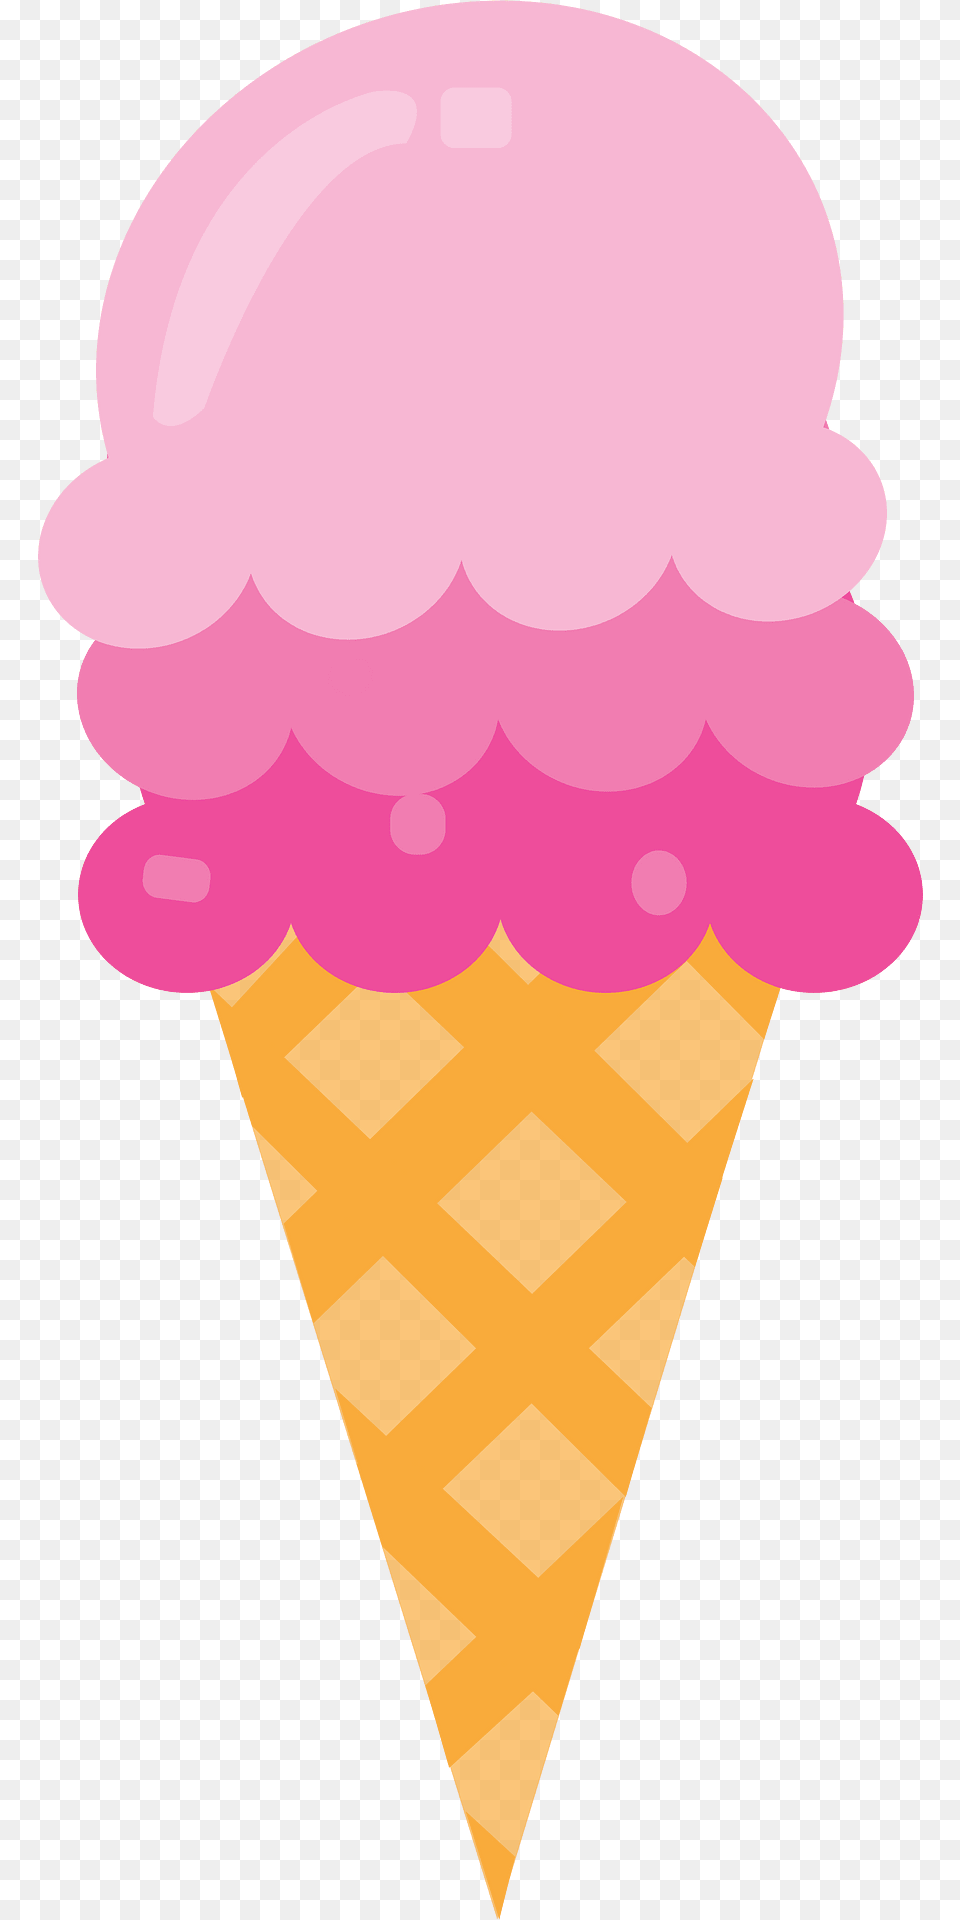 Icecream Clipart, Cream, Dessert, Food, Ice Cream Free Png